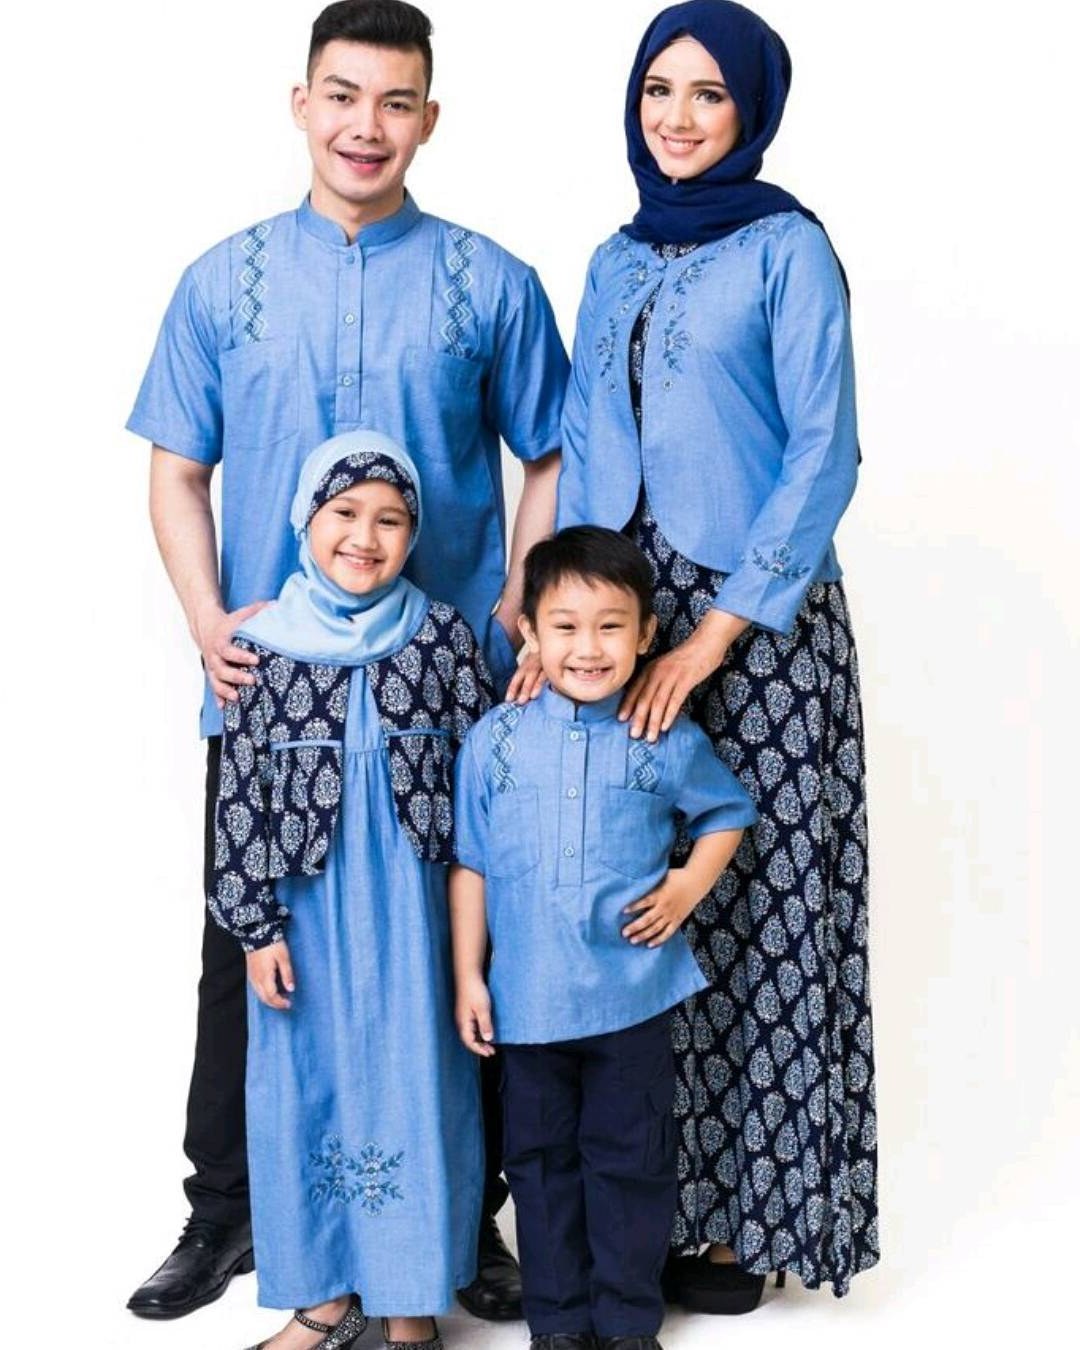 Bentuk Baju Lebaran Keluarga 2018 9ddf Model Baju Keluarga Untuk Hari Raya Lebaran 2018